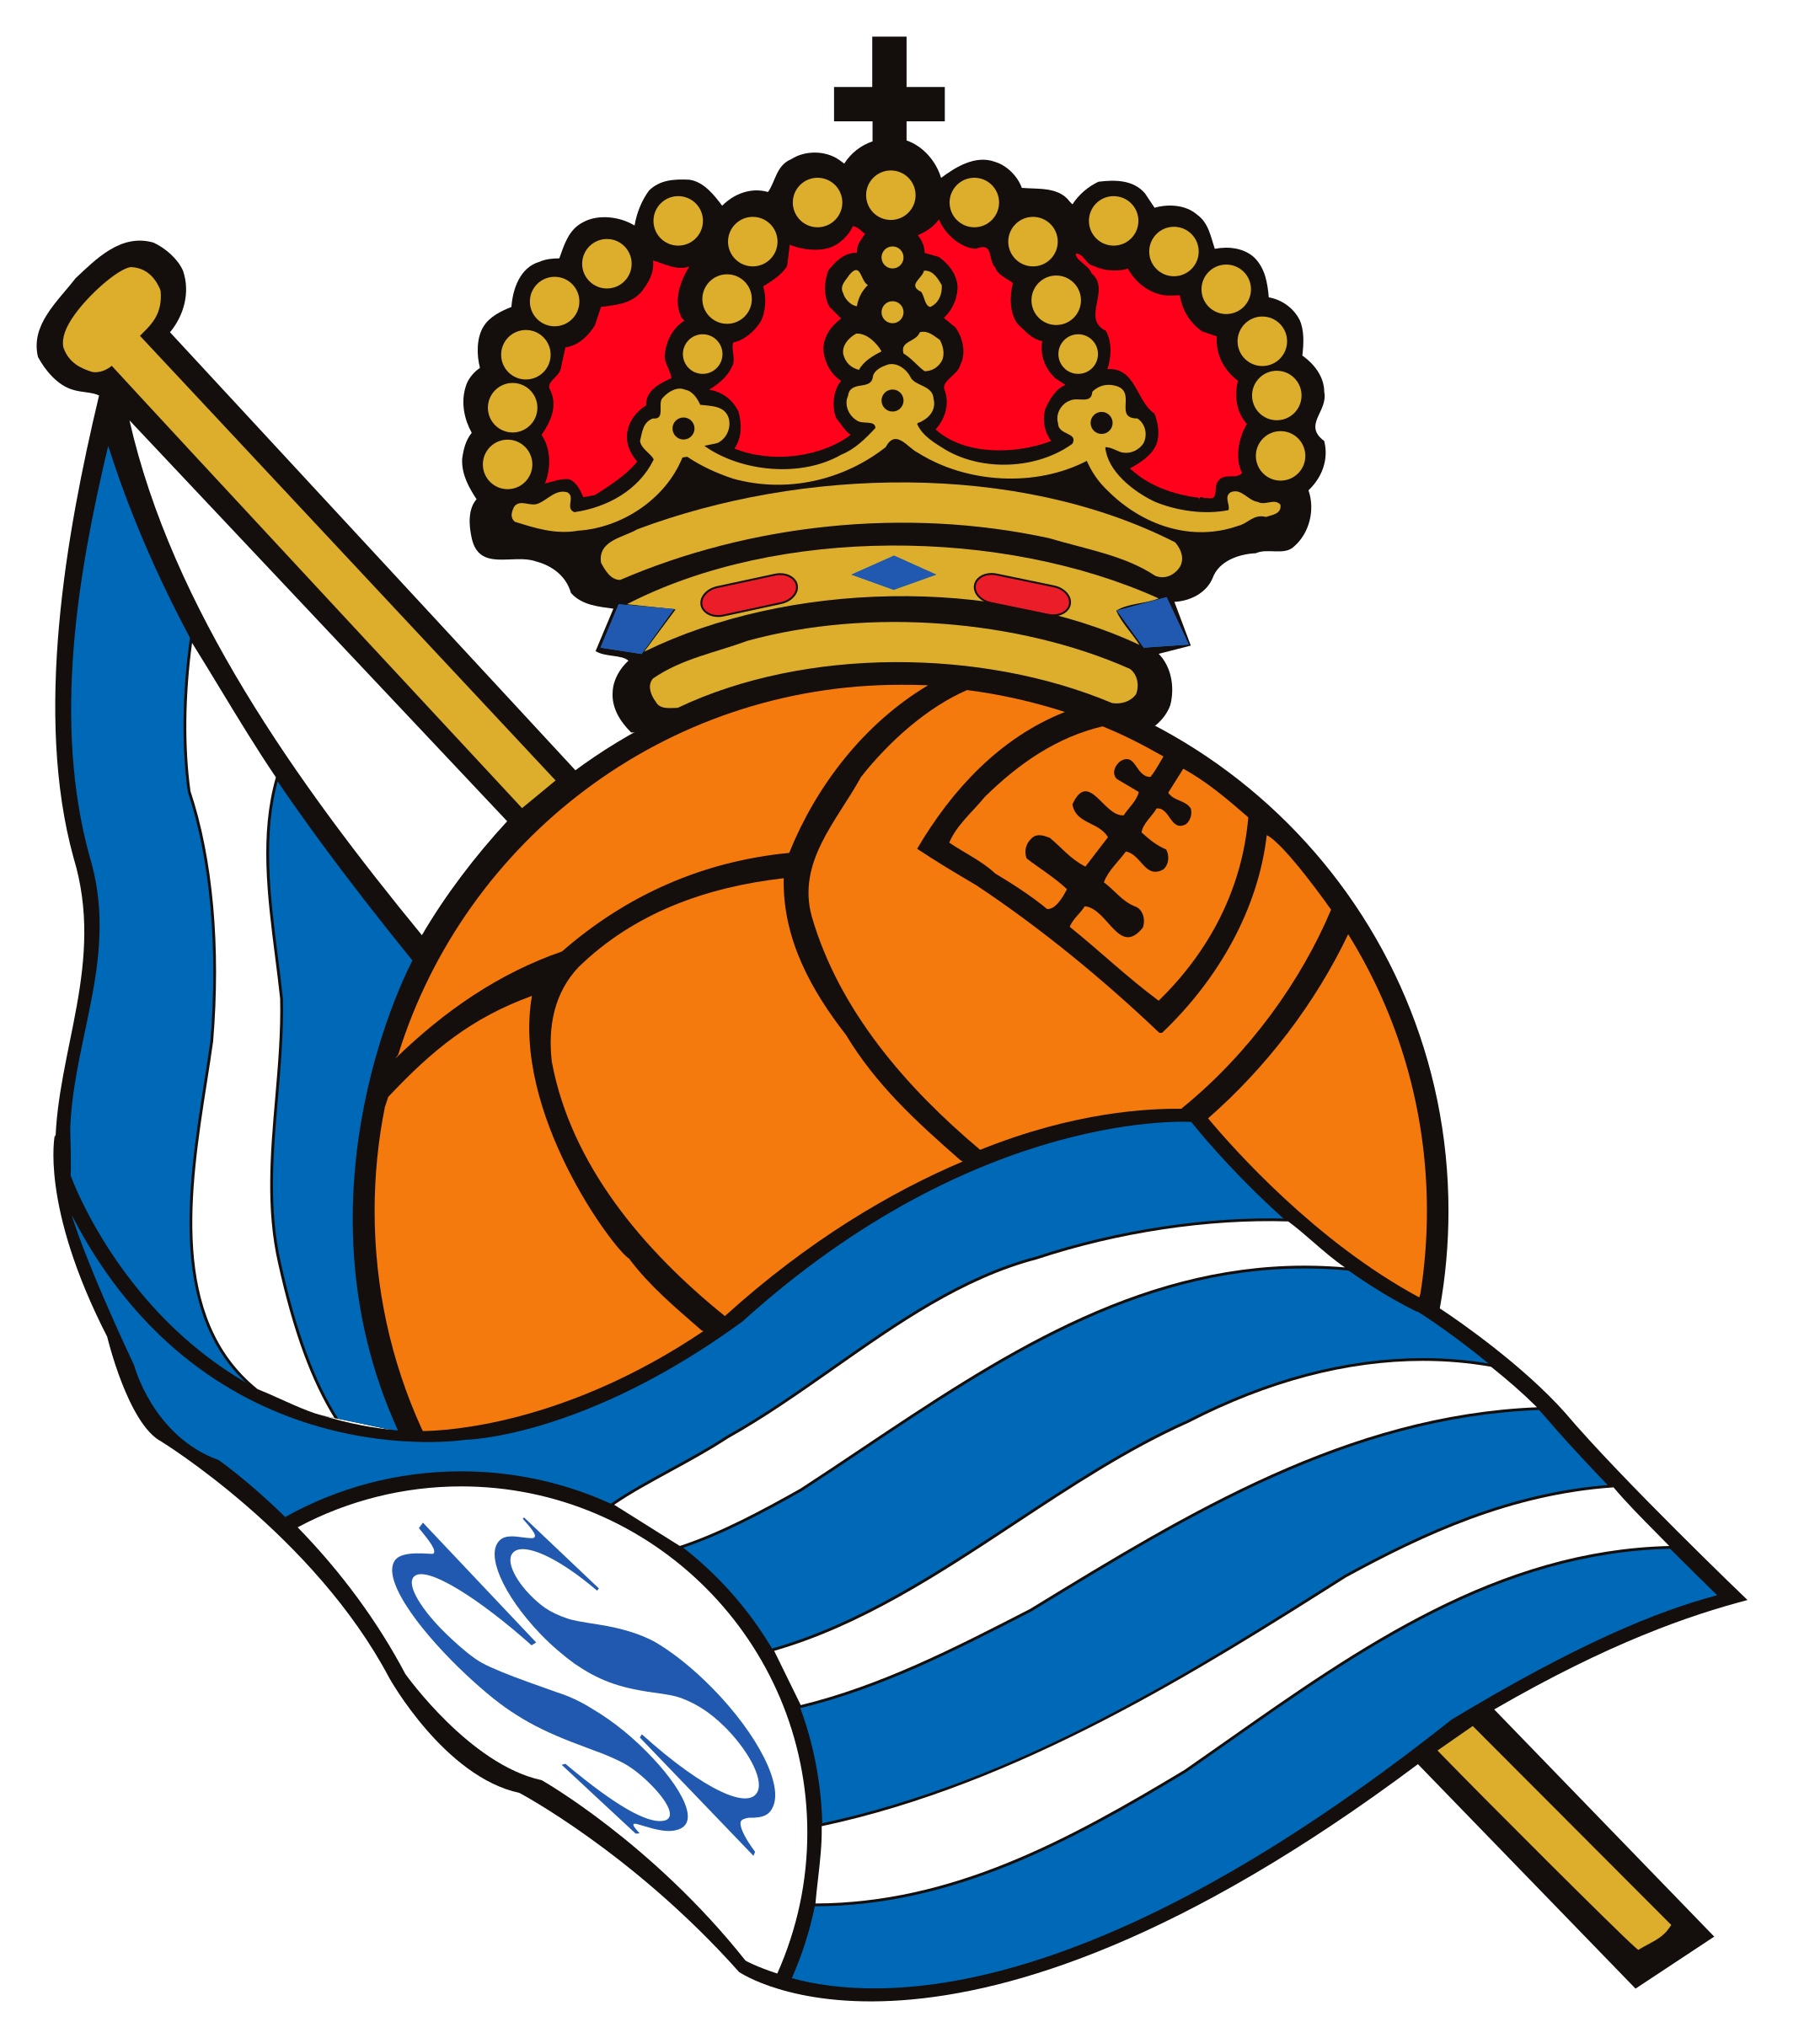 Real Sociedad Logo.